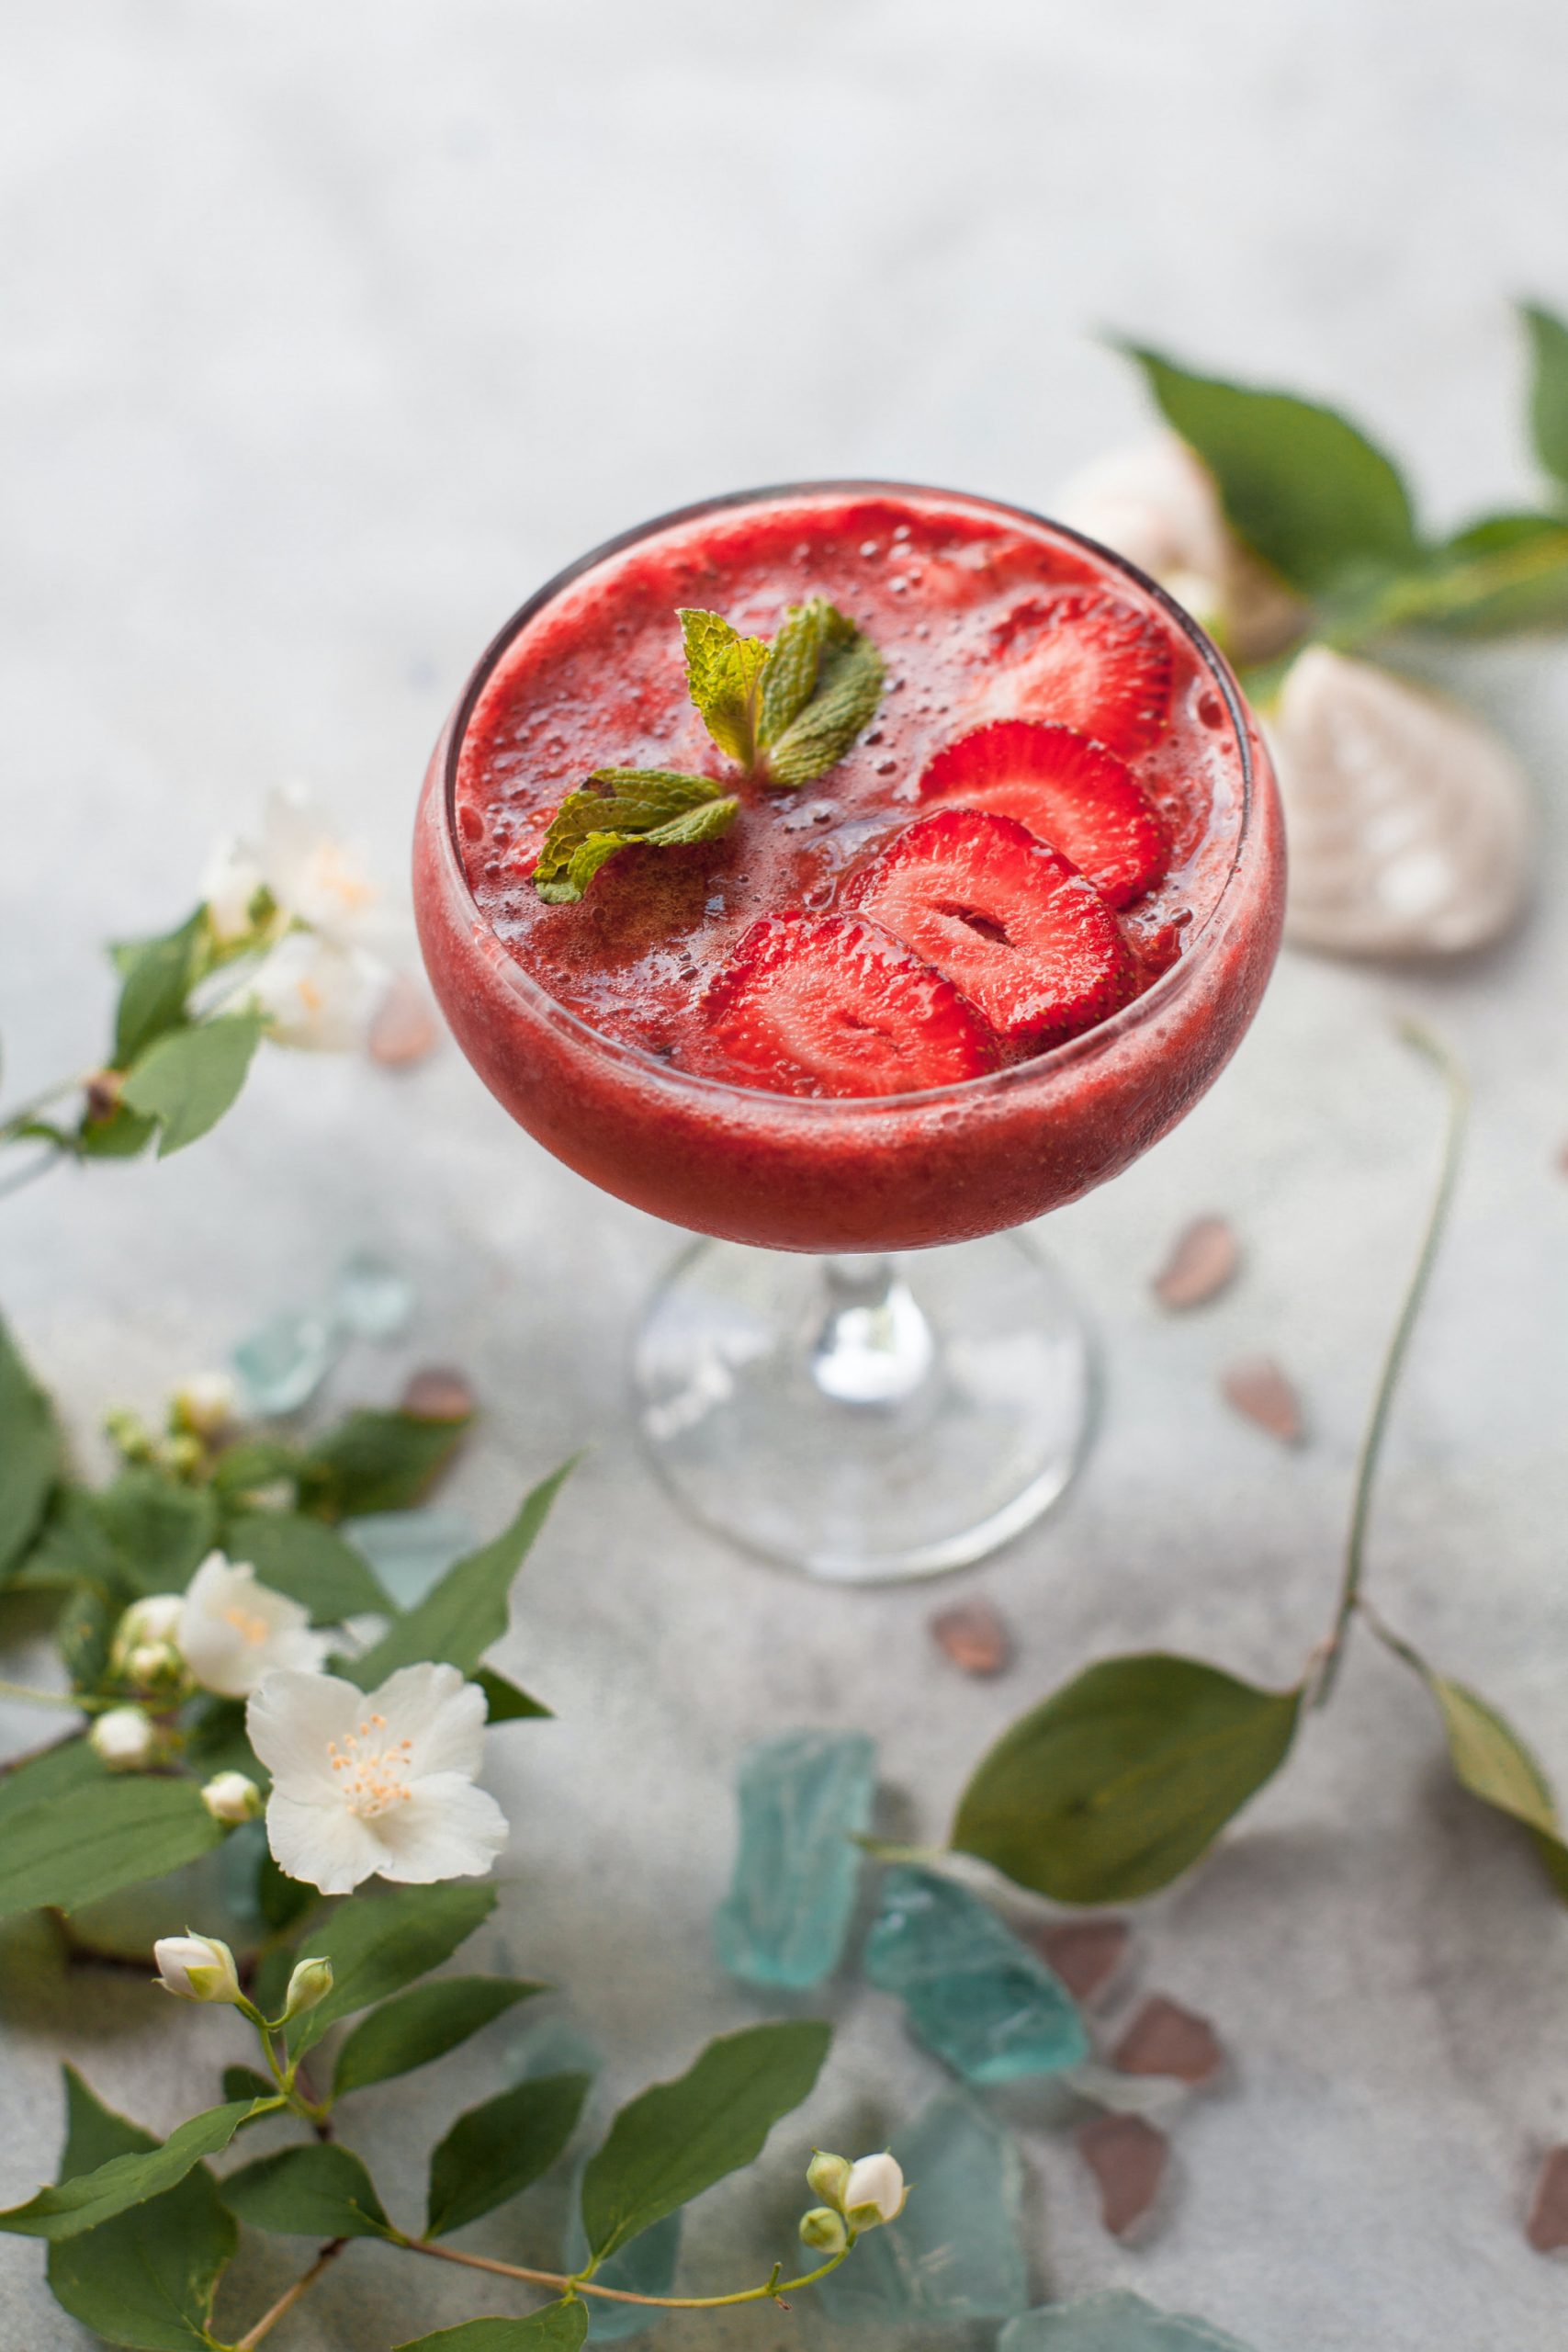 Best Easter mocktails strawberry drinks for spring